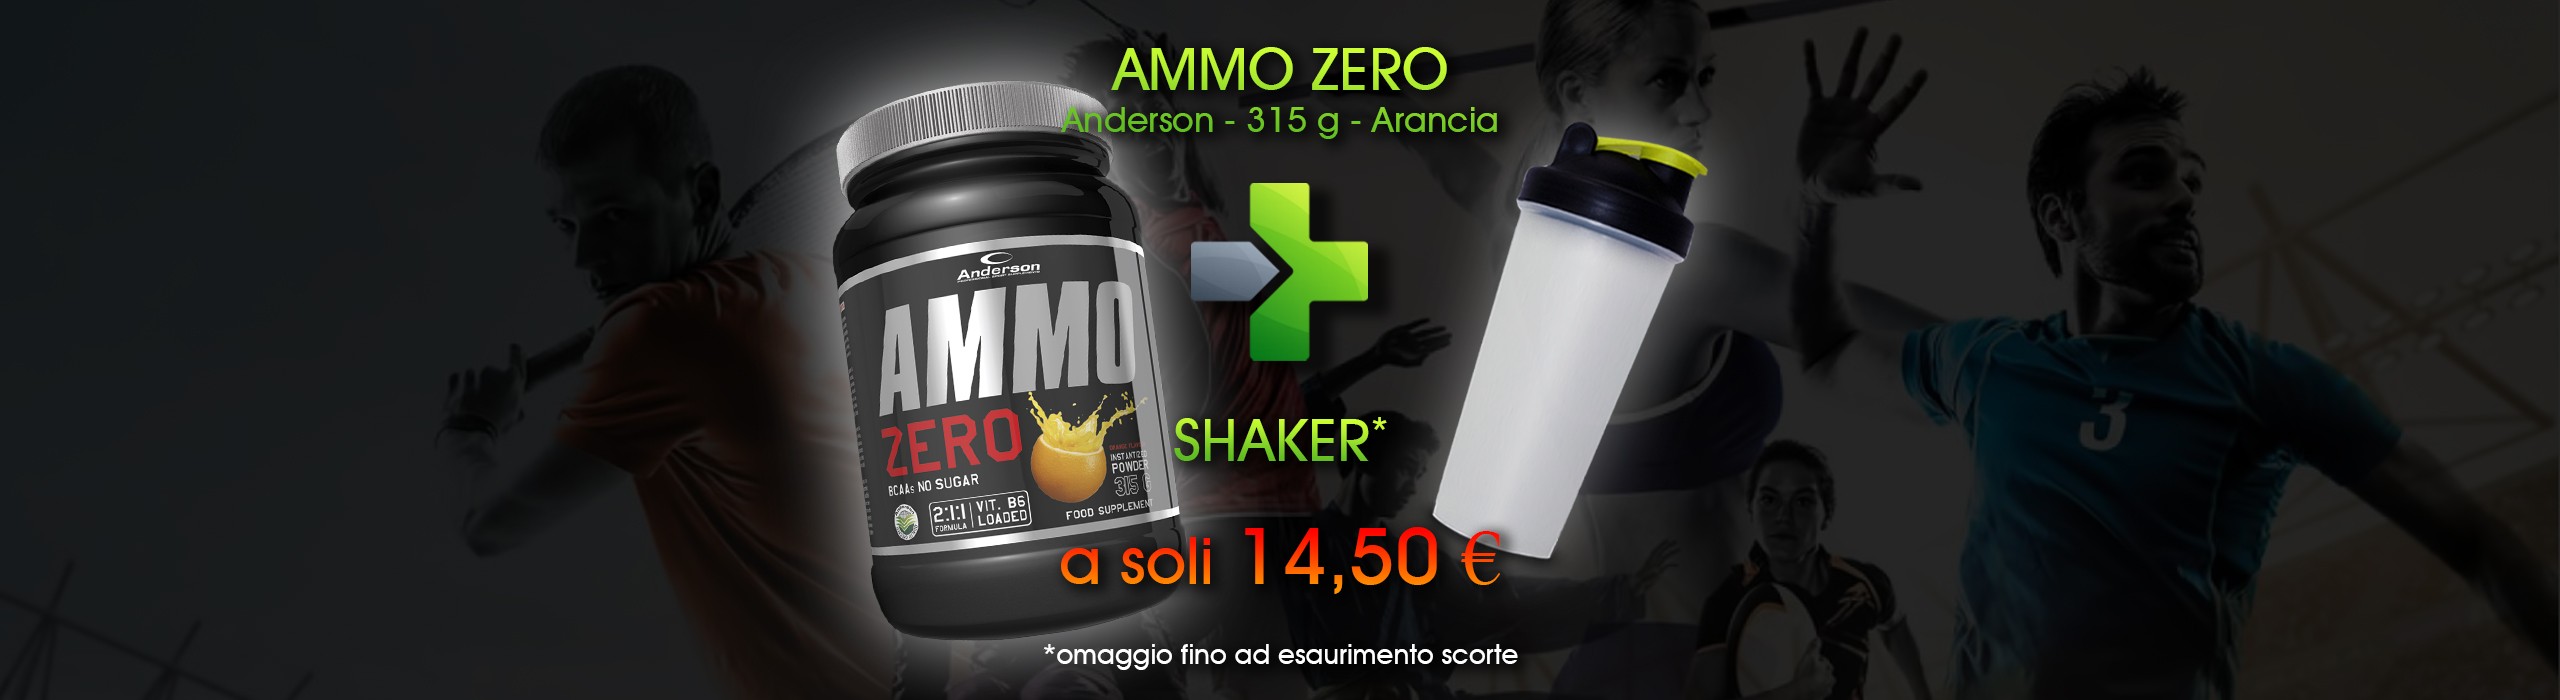 Ammo Zero + Shaker